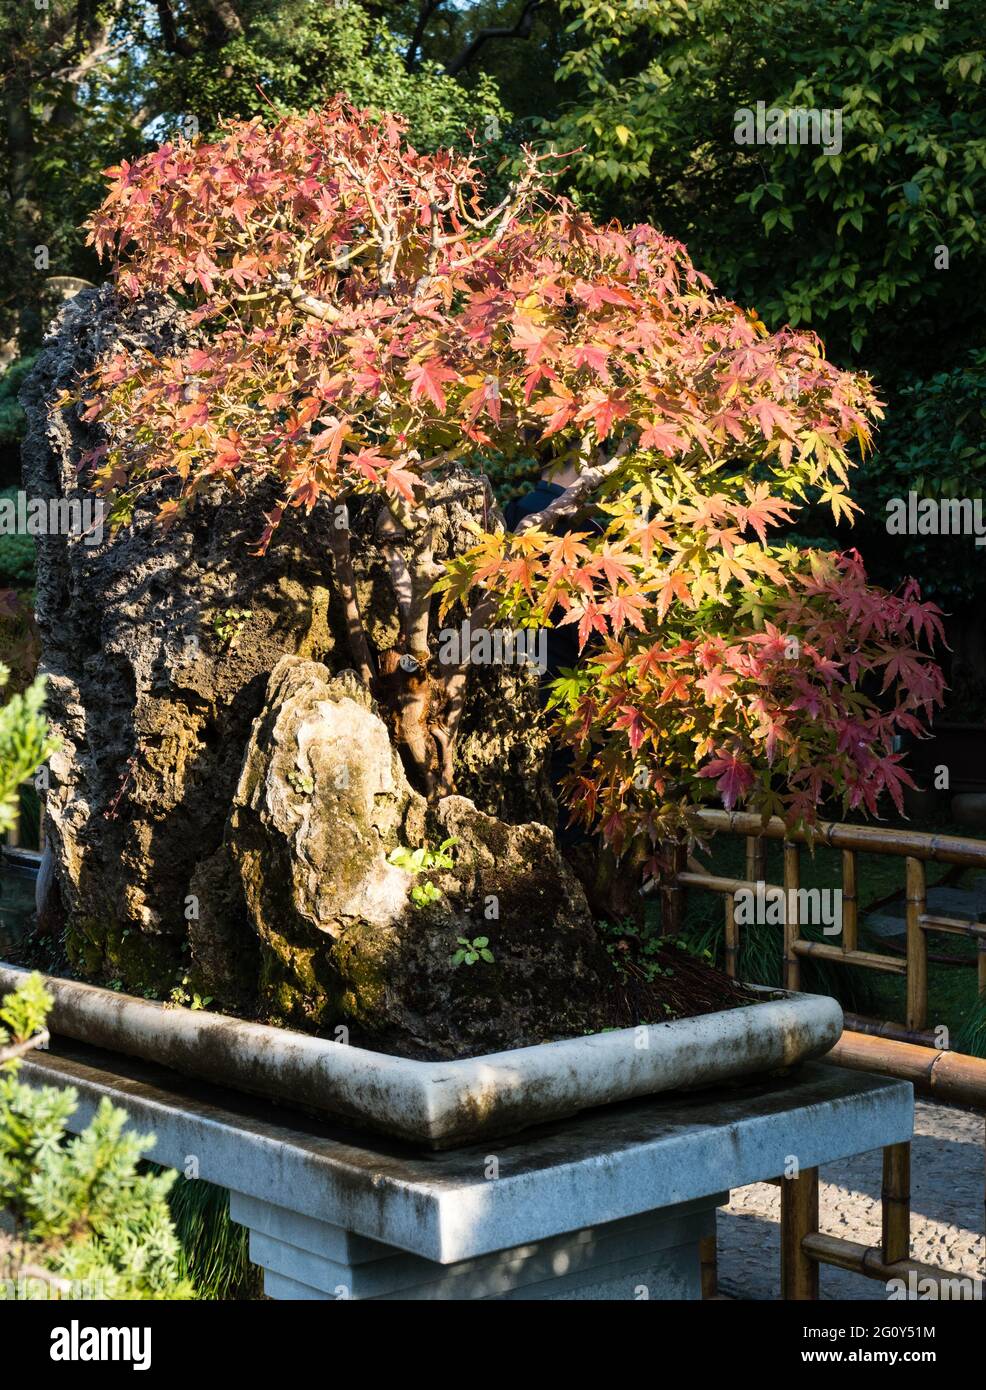 Immagine Di Acero Giapponese Bonsai Con Foglie Di Autunno Rosso -  Fotografie stock e altre immagini di Acero - iStock